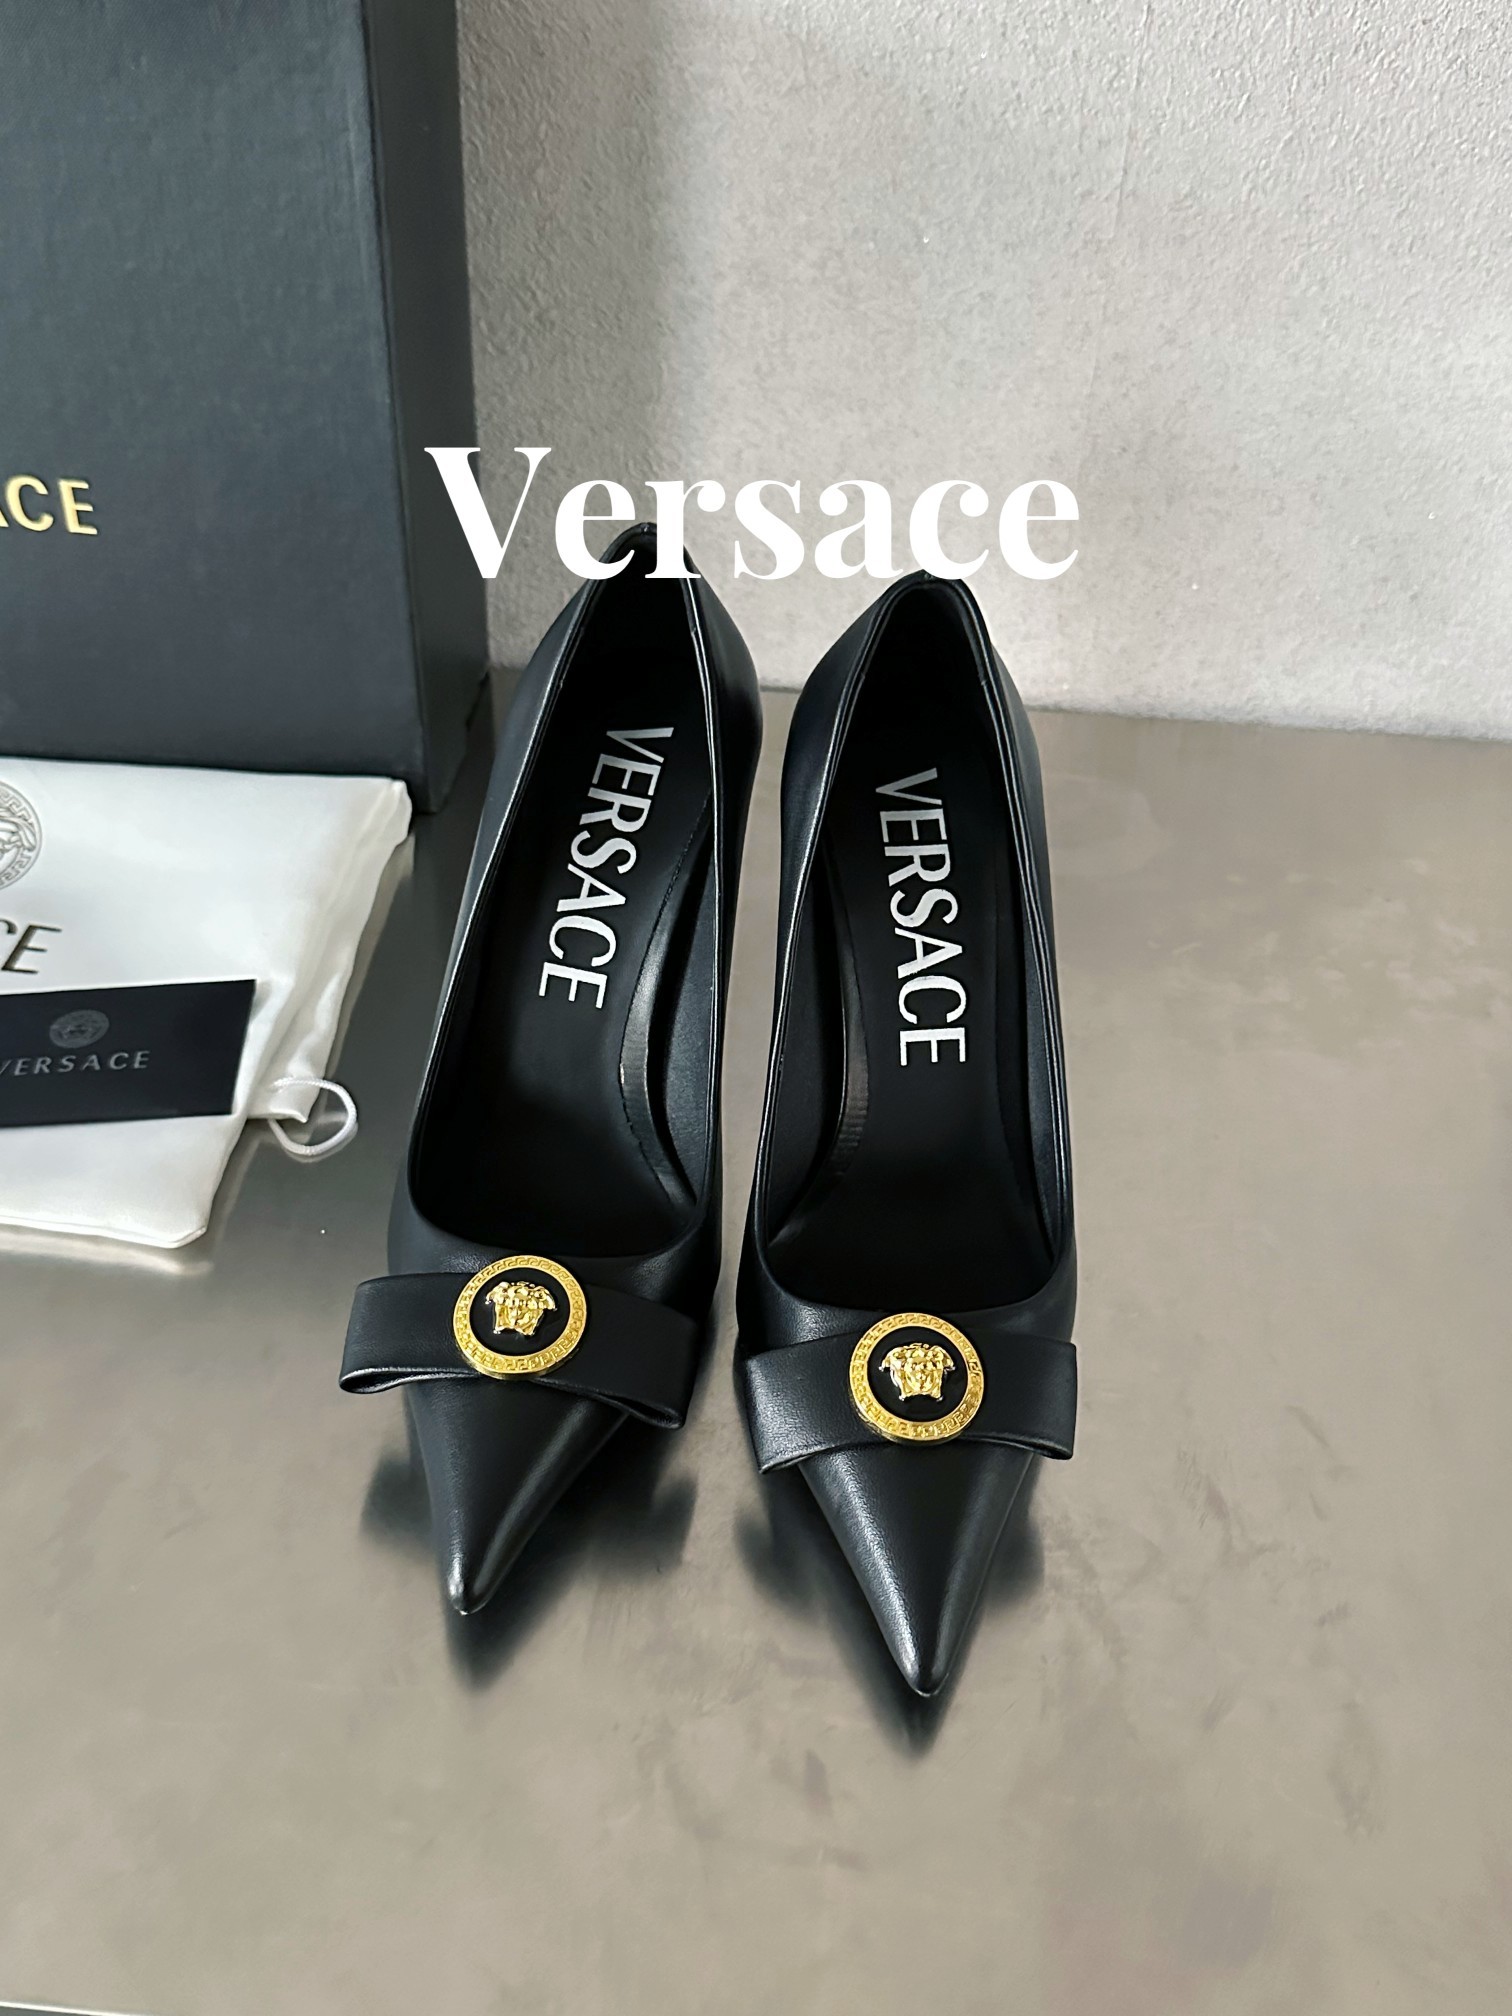 范思哲瓦萨琪Versace顶级版本范思哲/GIANNIRIBBON高跟鞋此款漆皮制成的尖头高跟鞋采用细高